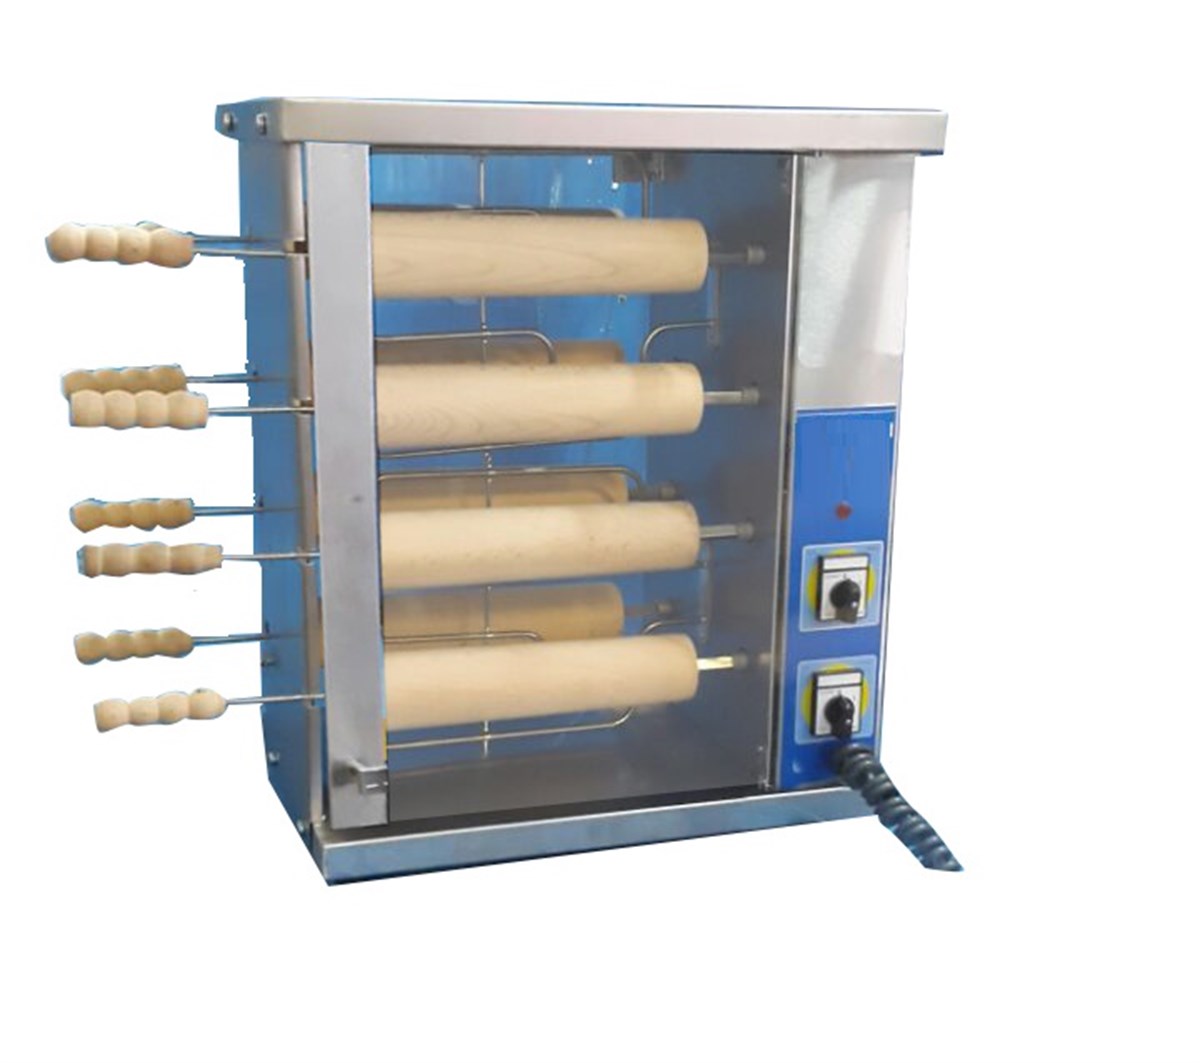 Makara Tatlı Makinası | Trdelnik Tatlısı Pişirme Makinası Modelleri ve  Endüstriyel Tatlı Pişirme Makineleri Fiyatları